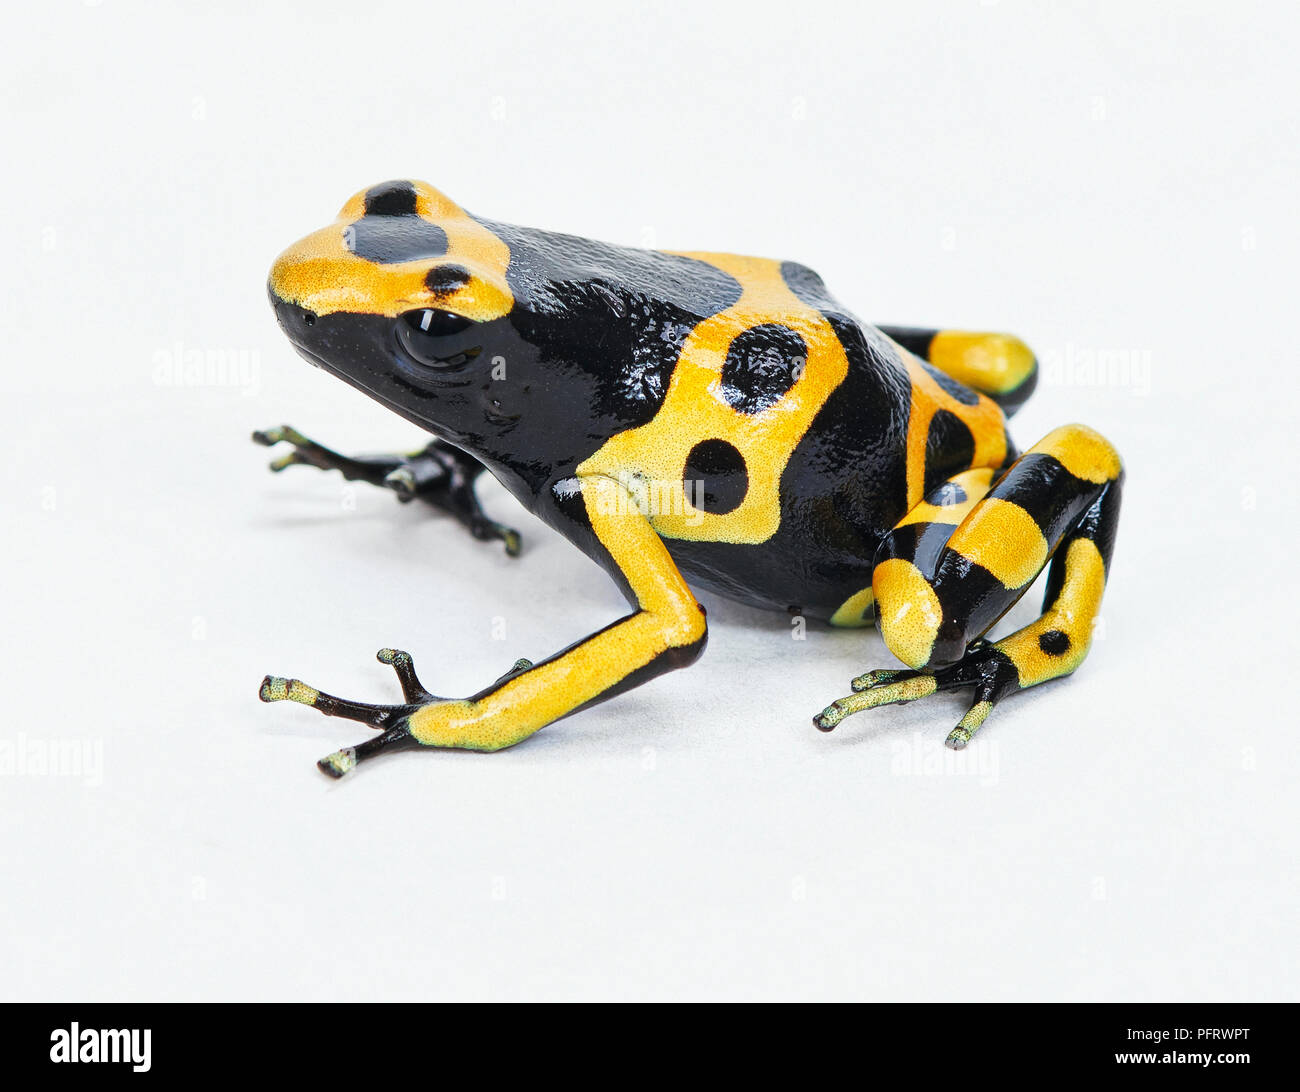 Bumblebee posion Dart frog Stockfoto